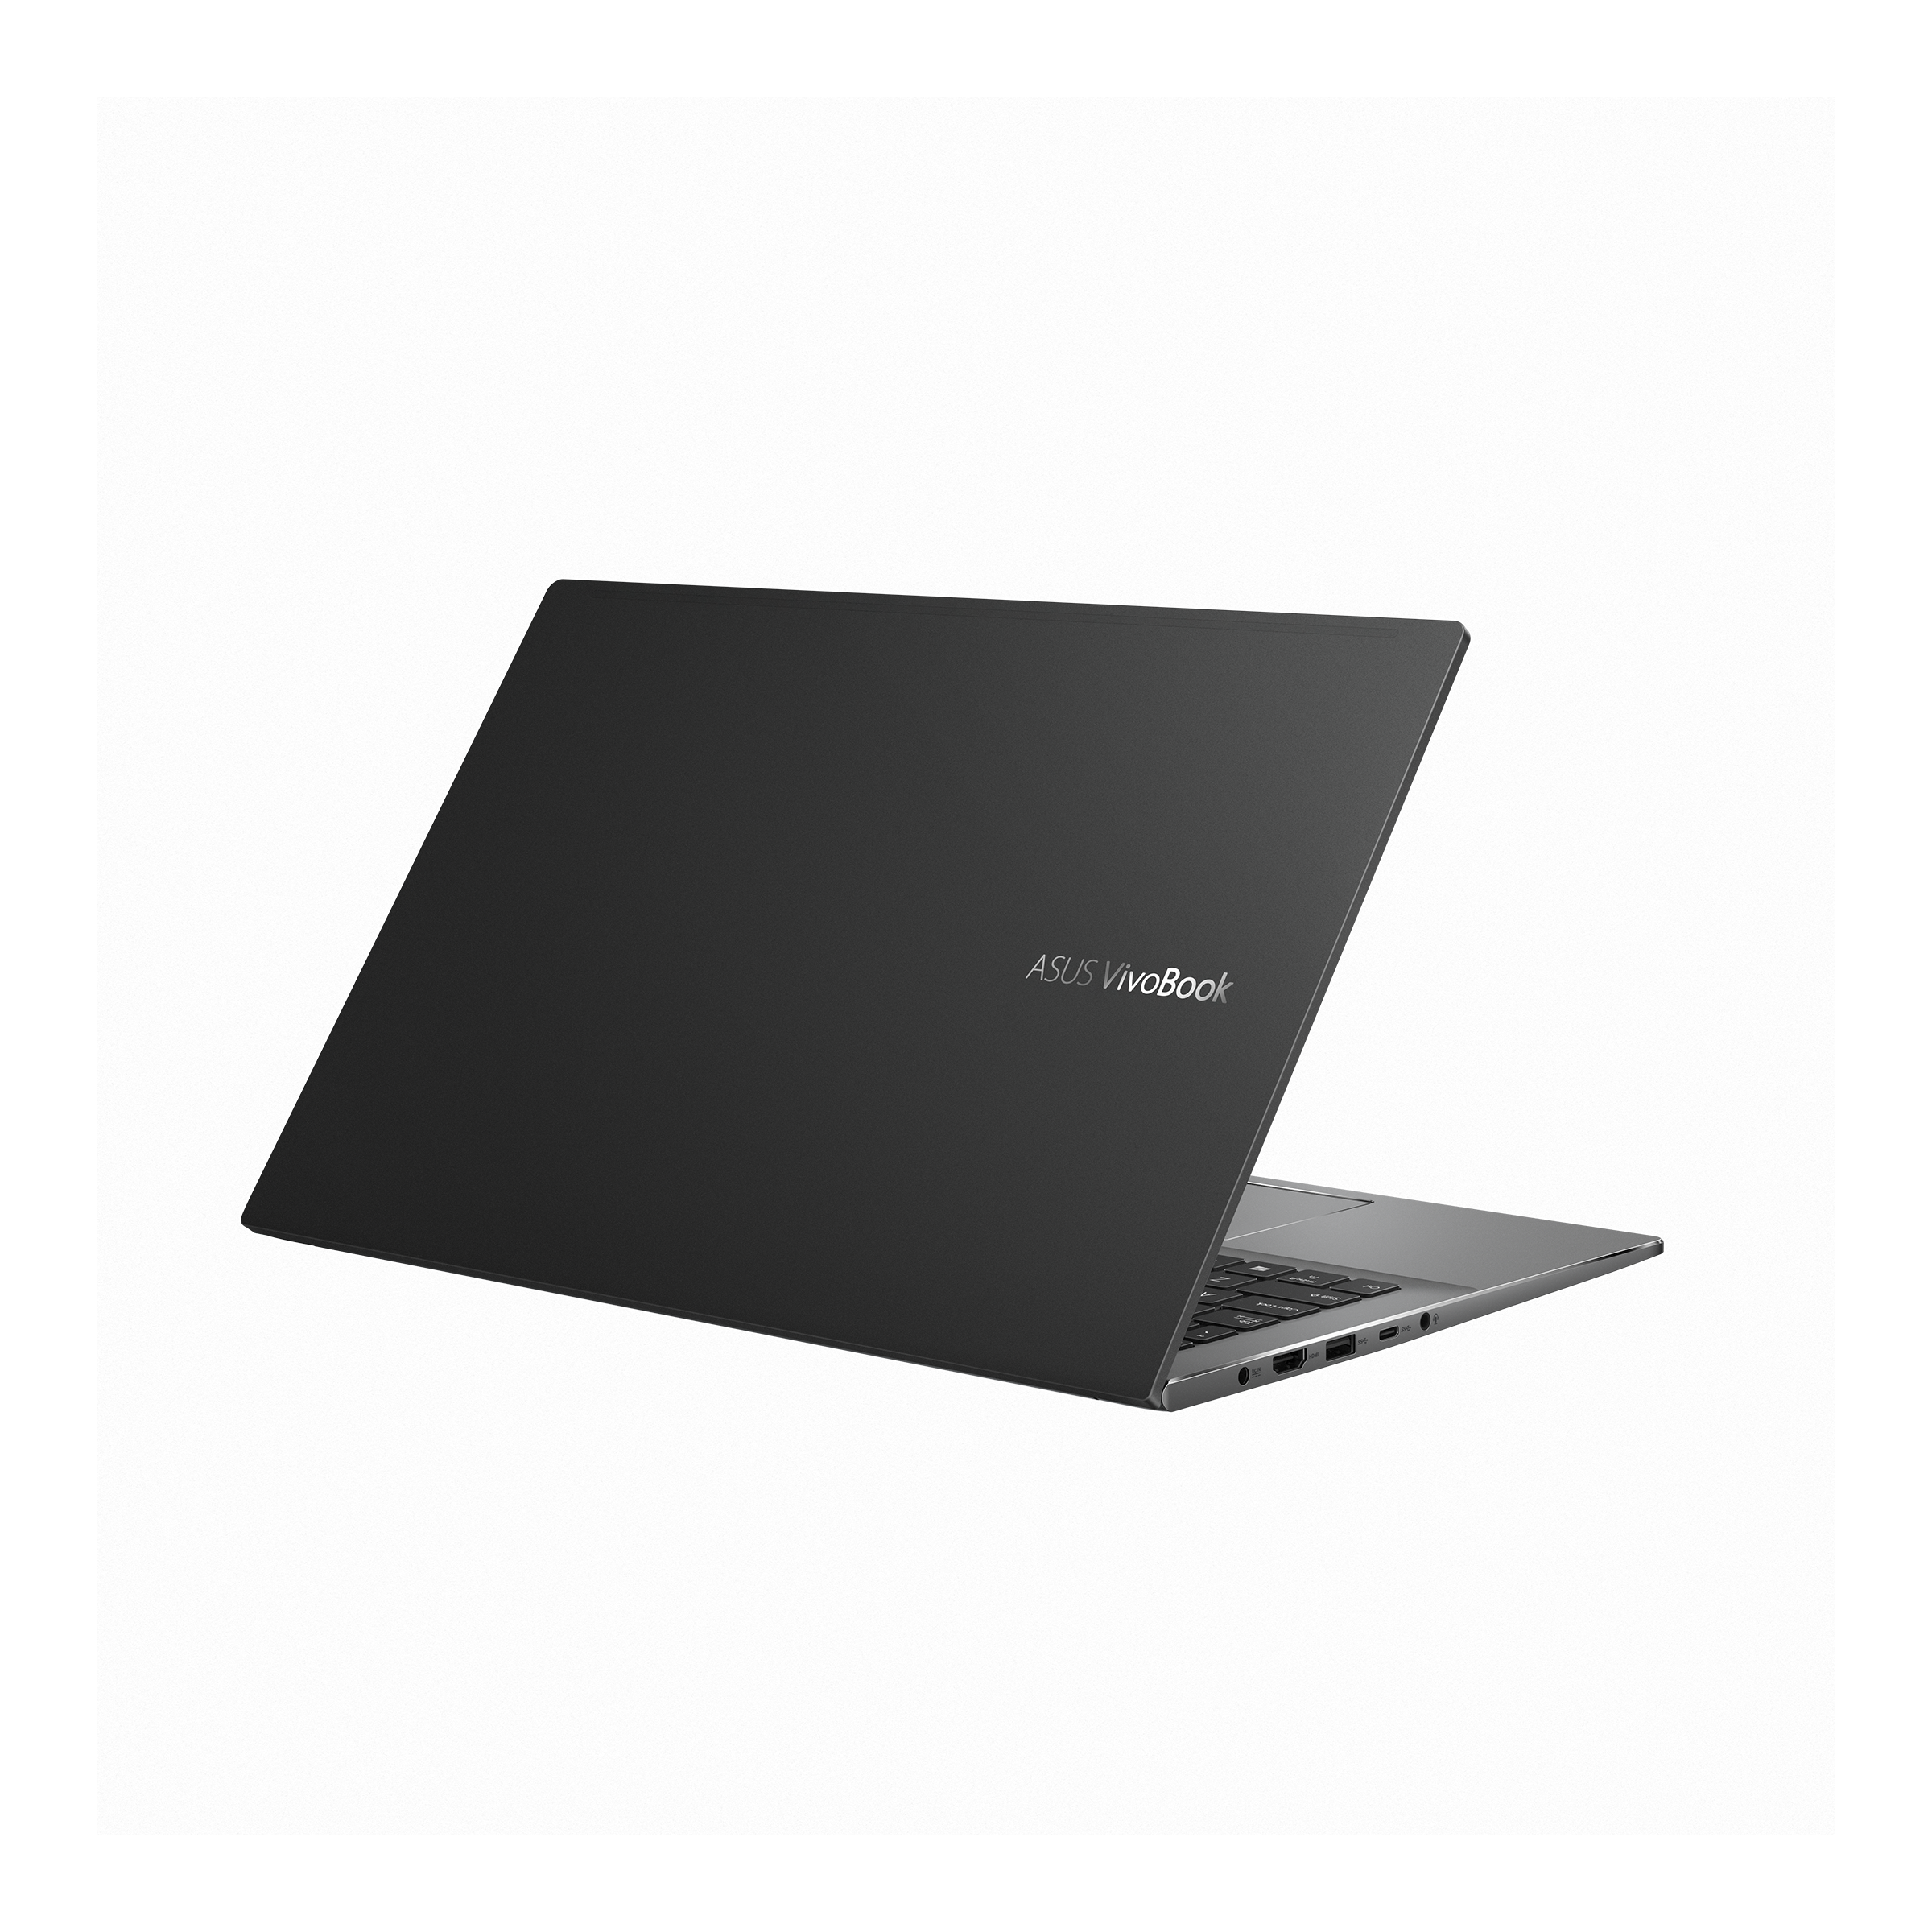 Vivobook S15 S533 (11th Gen Intel)